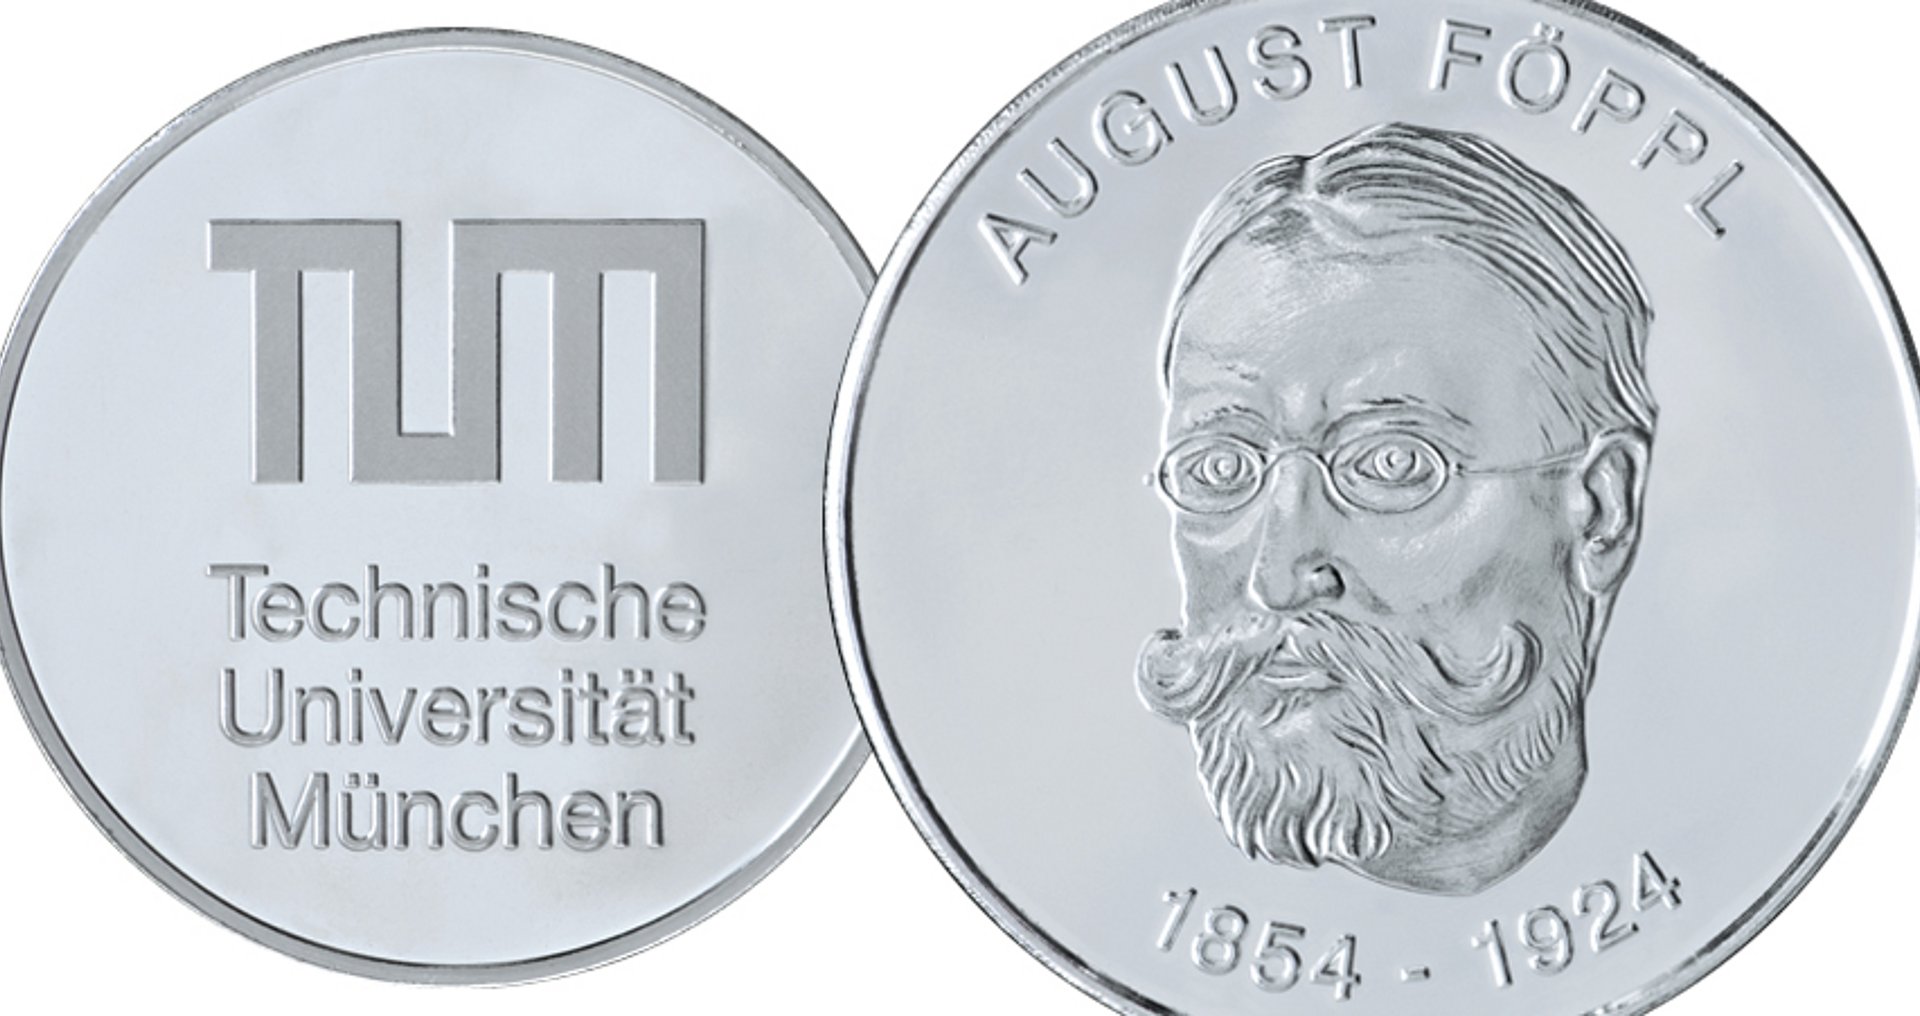 Die August Föppl-Medaille der Technischen Universität München (TUM)